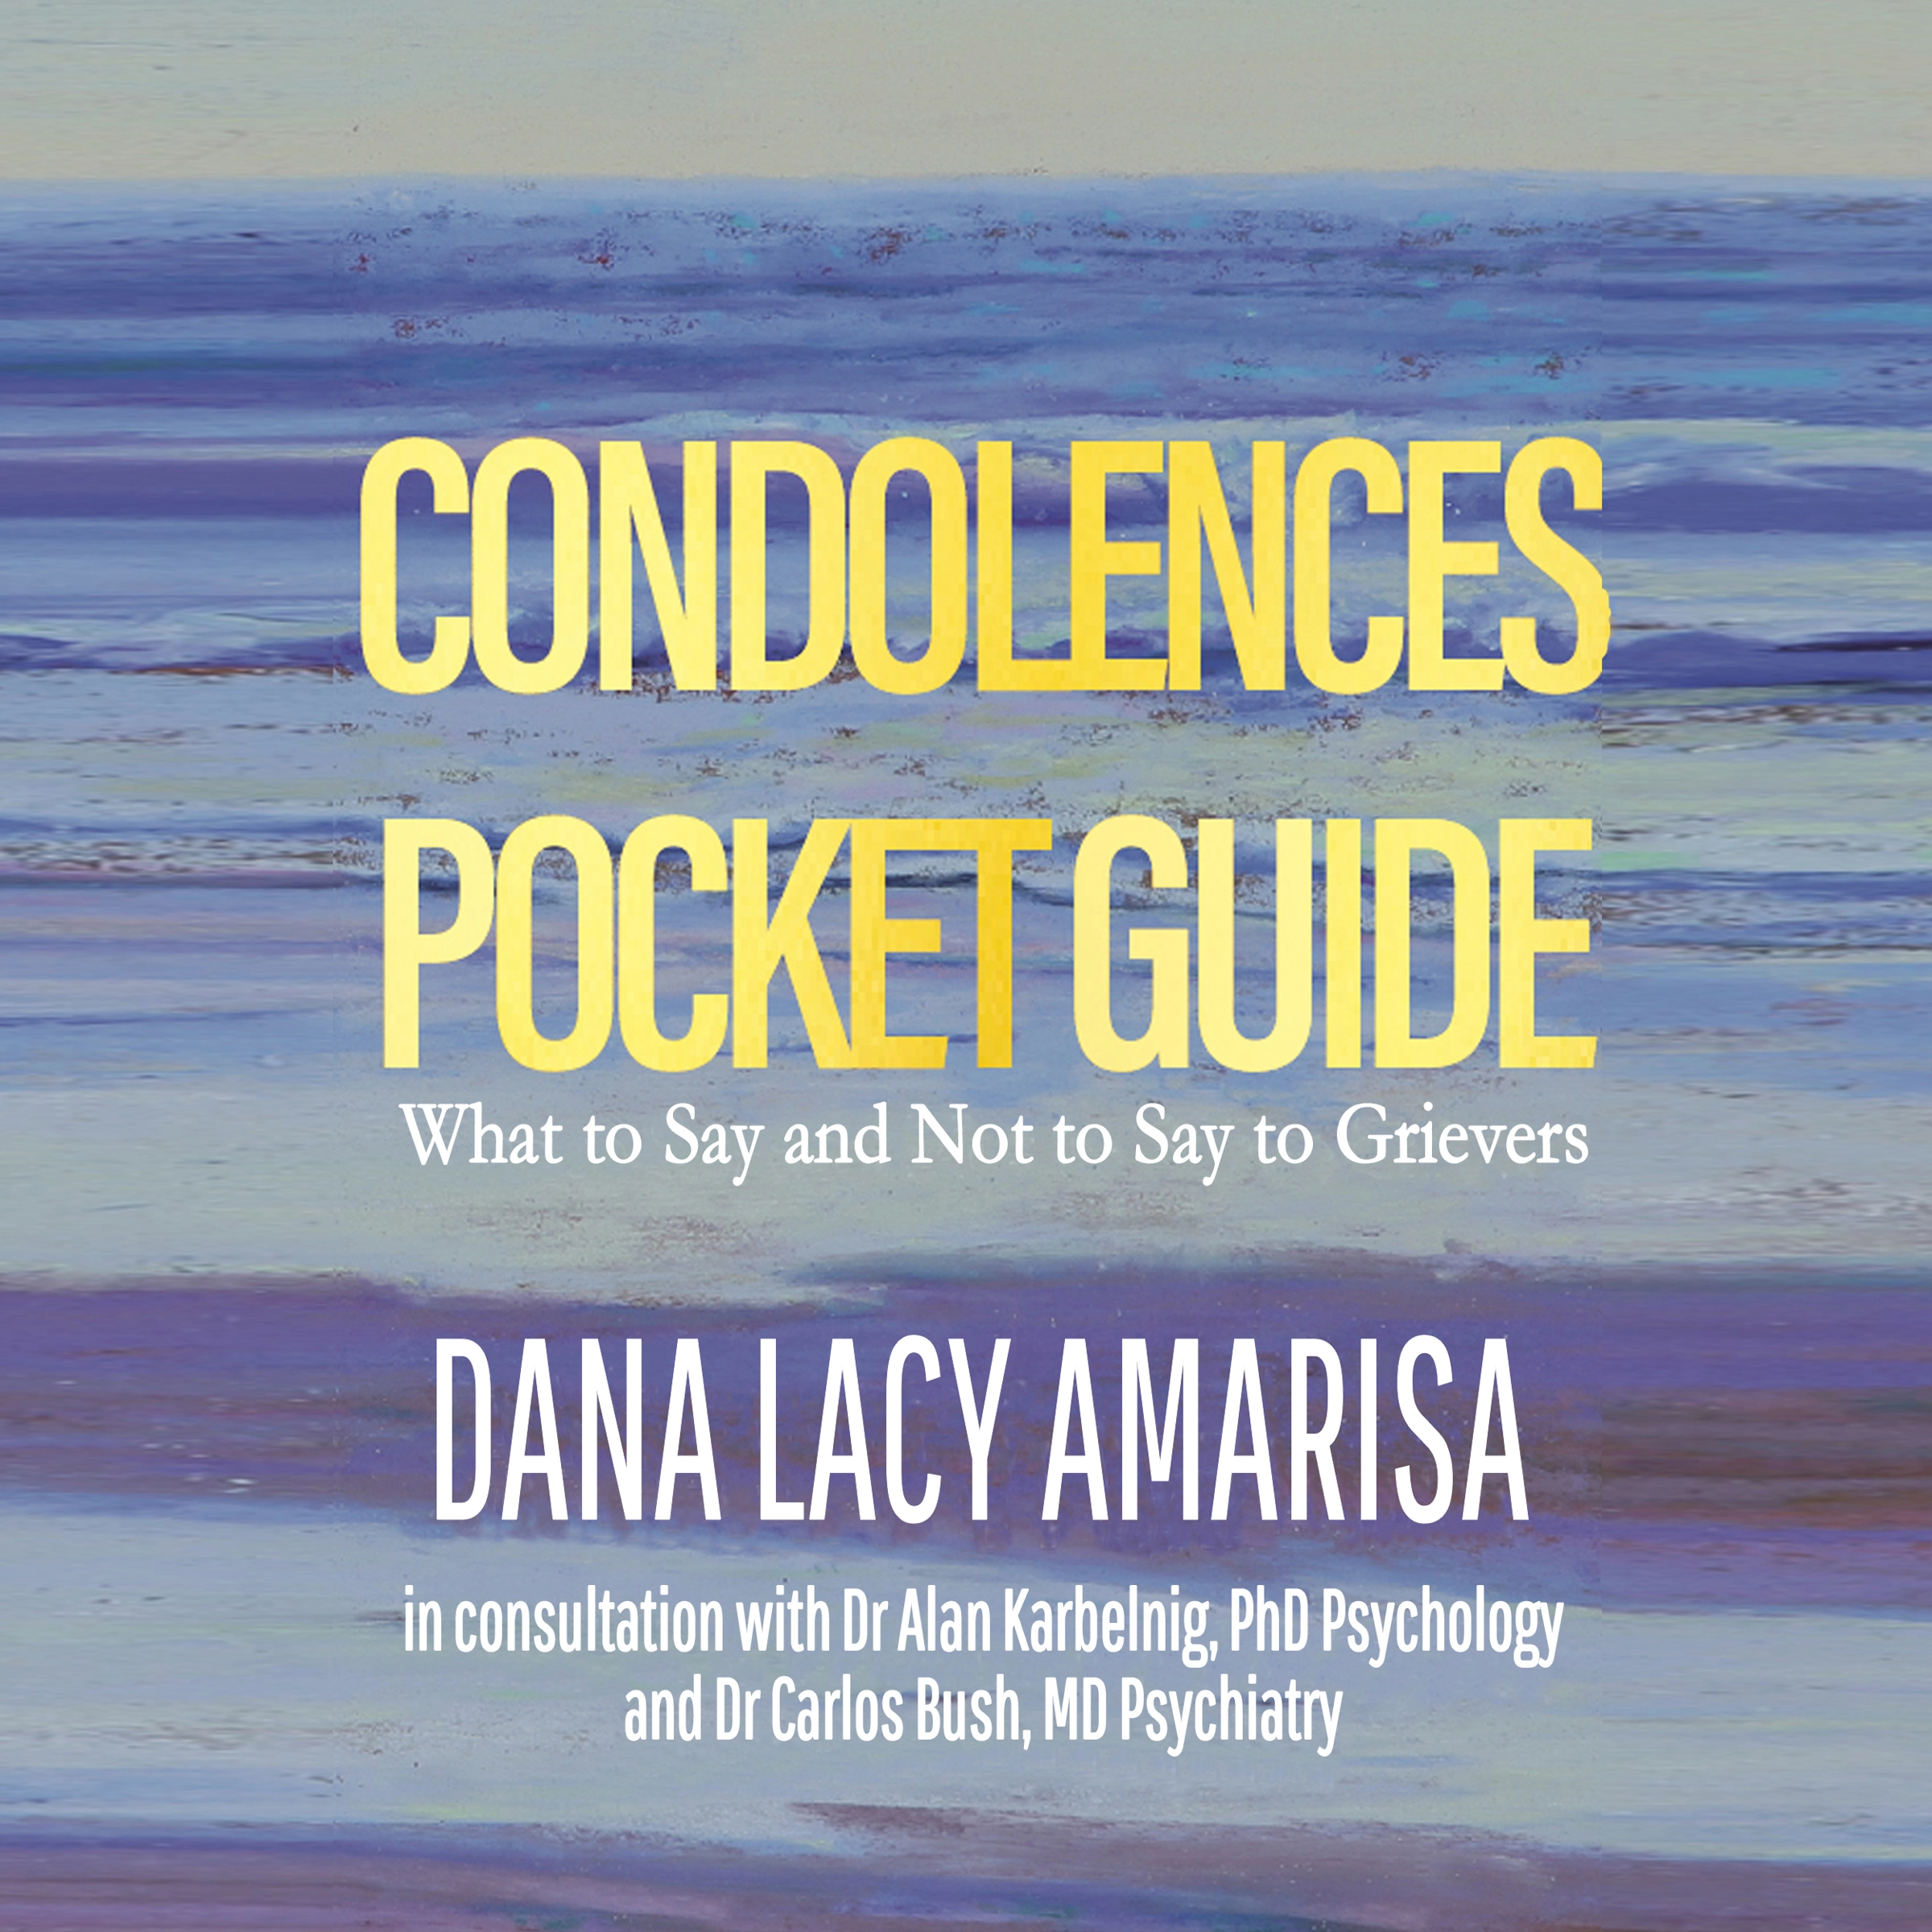 Condolences Pocket Guide Audiobook by Dana Lacy Amarisa